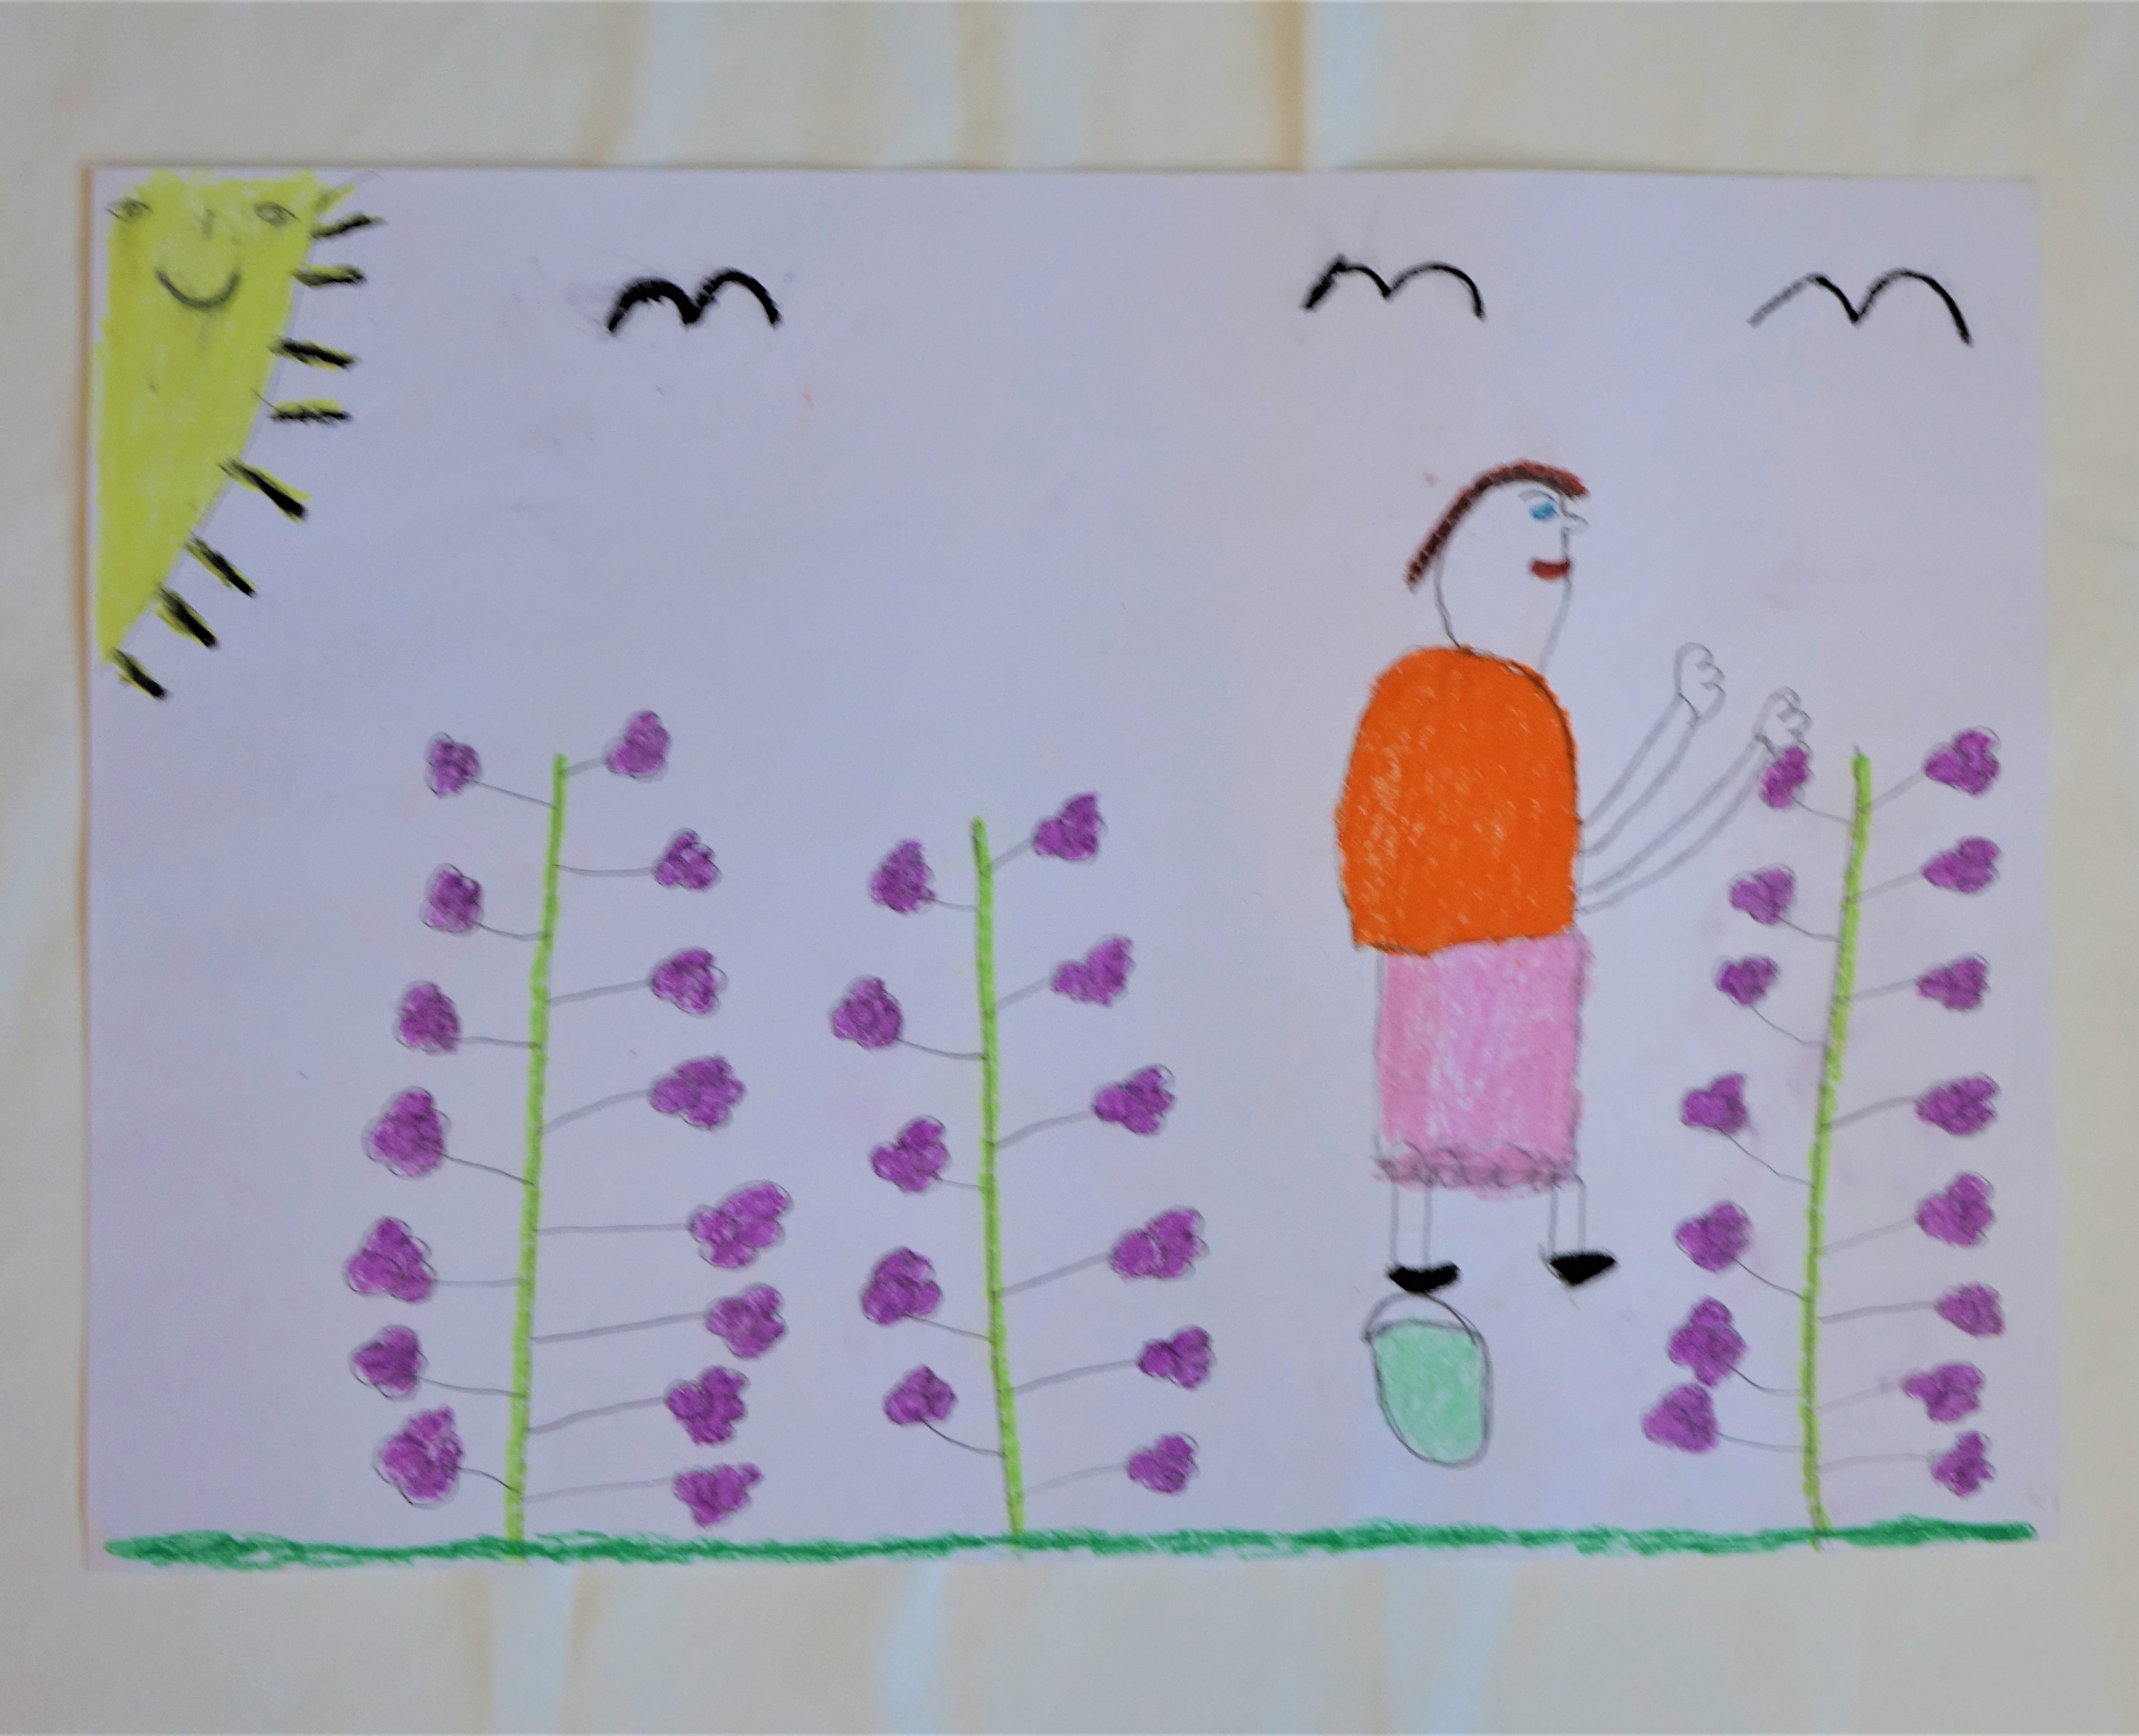 A rajzolt képen három darab mályvabokor látható lila virággal, melyet szüretel Tóth Mária. A kép bal felső sarkában mosolyog a nap és három madár repül az égen.